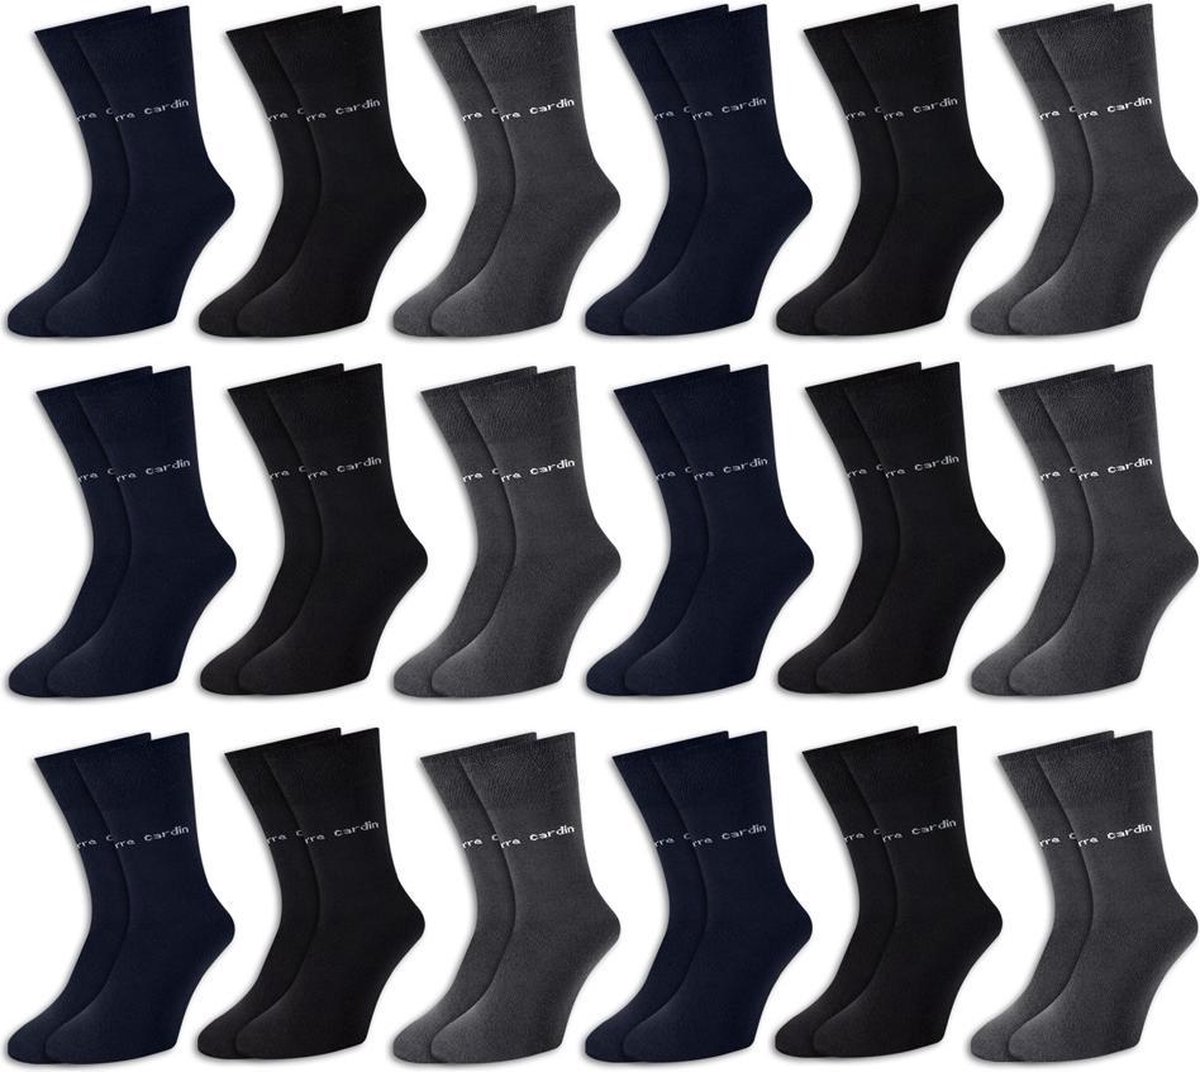 Pierre Cardin® - Herensokken - 18 Paar - antraciet blauw zwart - 43/46 - Pierre Cardin